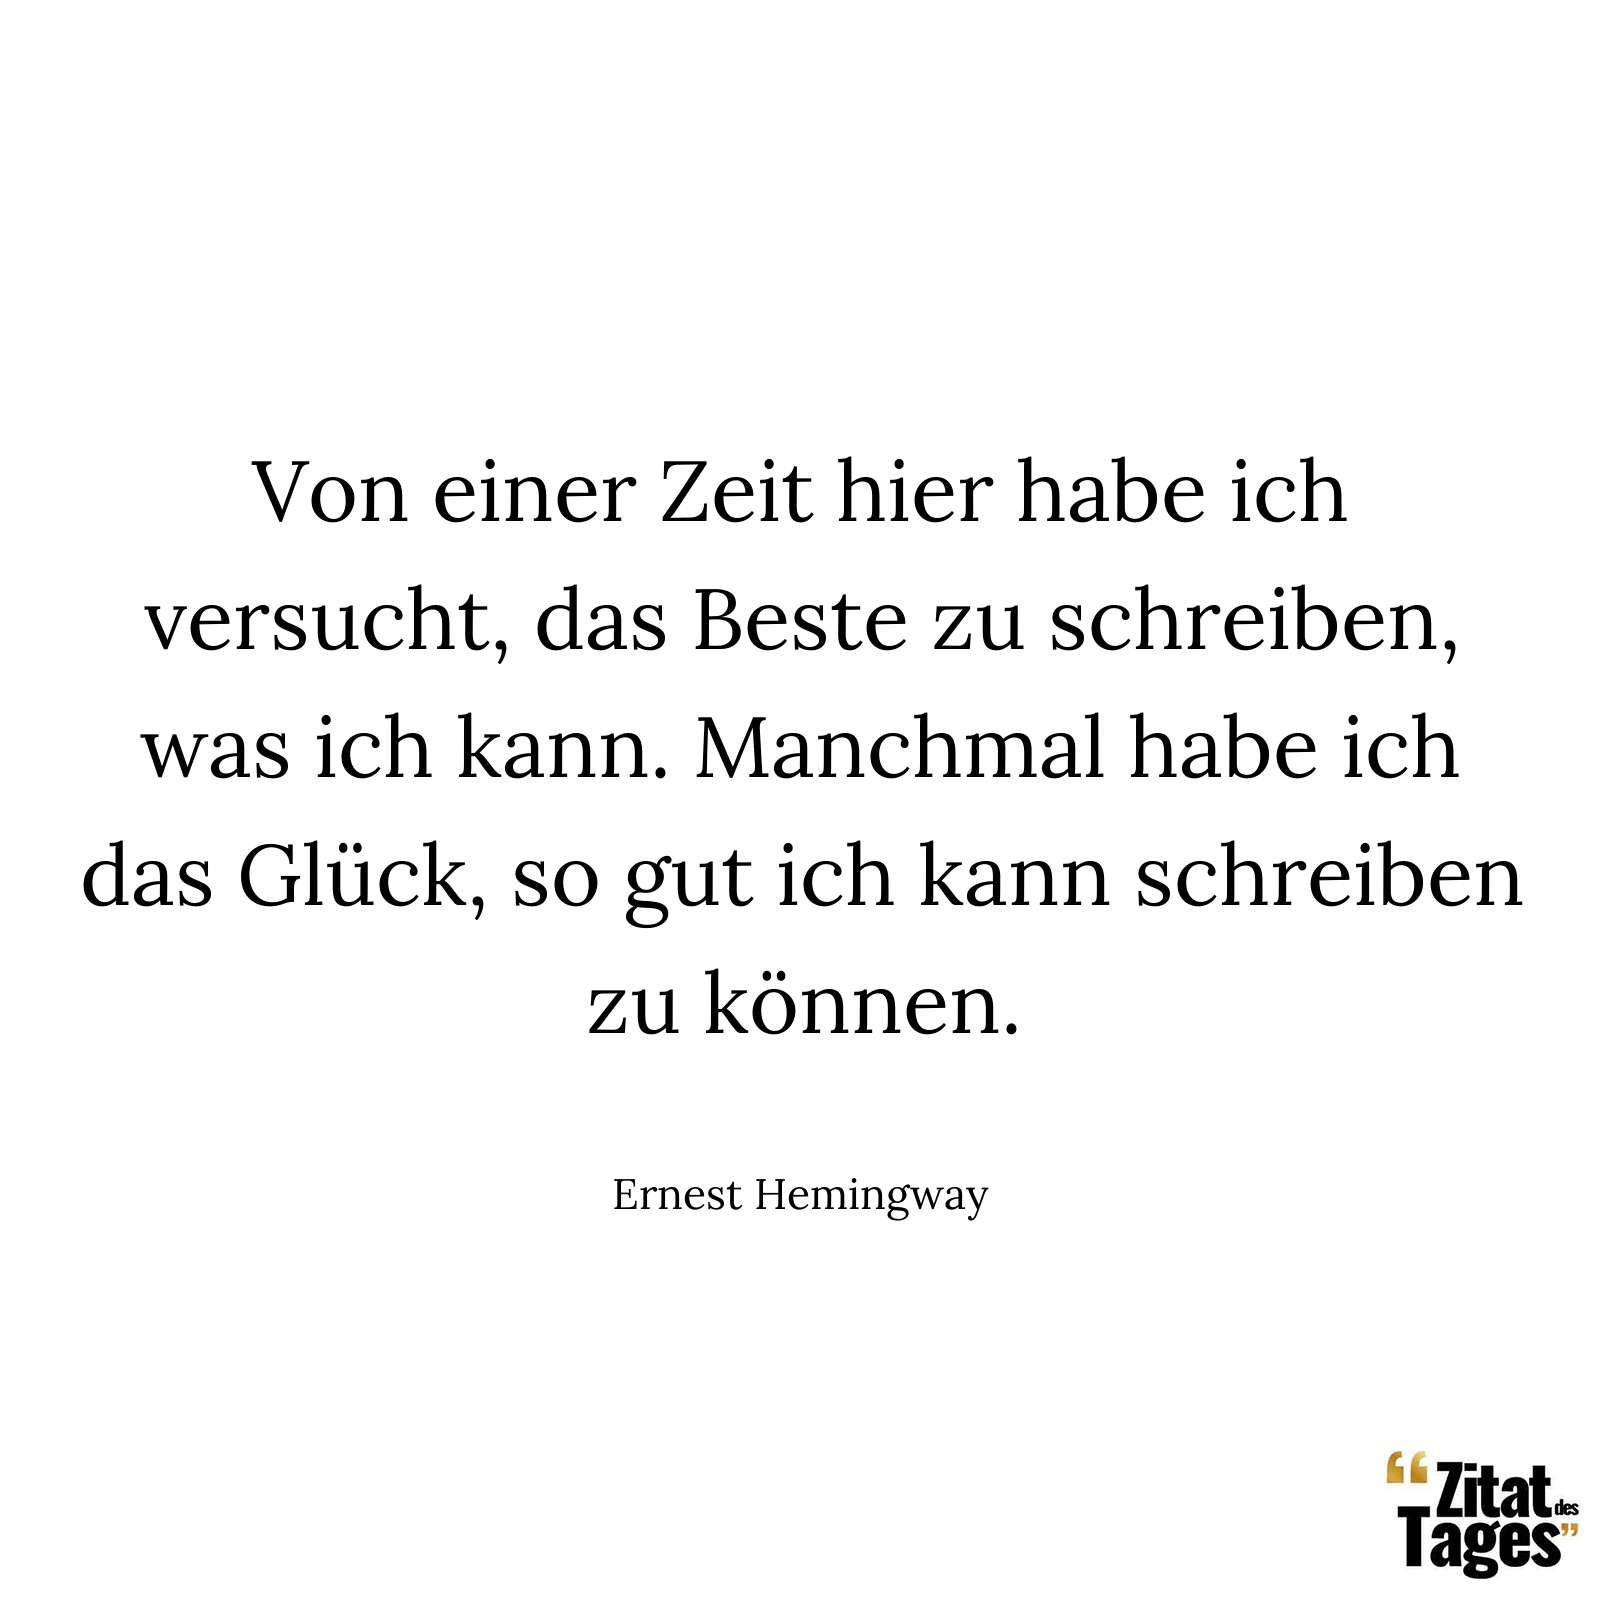 Von einer Zeit hier habe ich versucht, das Beste zu schreiben, was ich kann. Manchmal habe ich das Glück, so gut ich kann schreiben zu können. - Ernest Hemingway